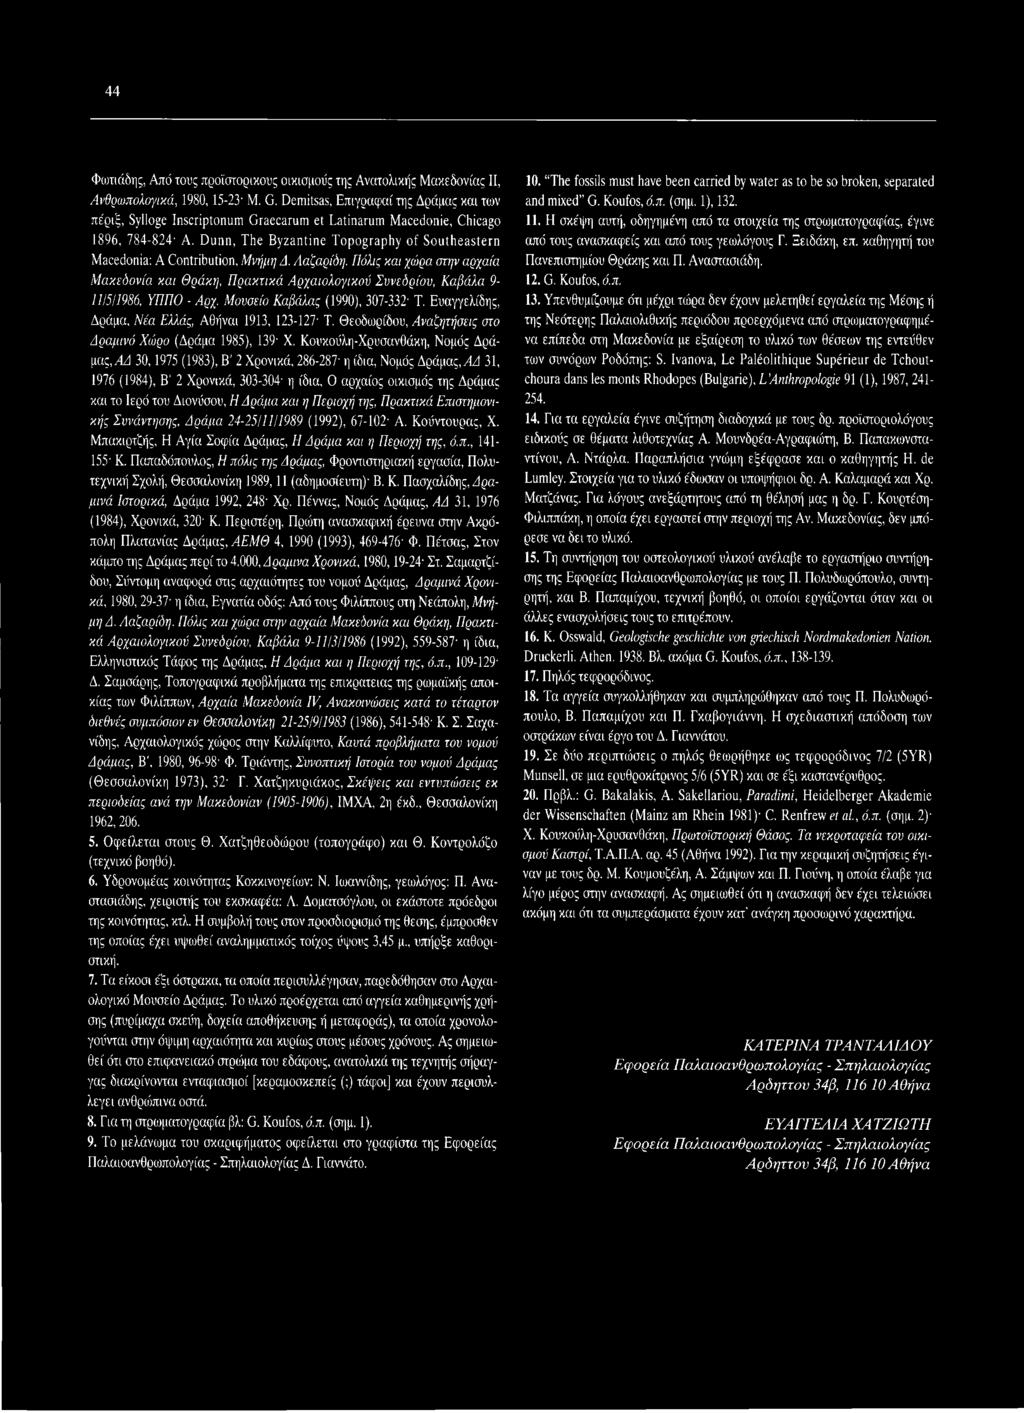 Ευαγγελίδης, Δράμα, Νέα Ελλάς, Αθήναι 1913, 123-127 Τ. Θεοδωρίδου, Αναζητήσεις στο Δραμινό Χώρο (Δράμα 1985), 139 X.